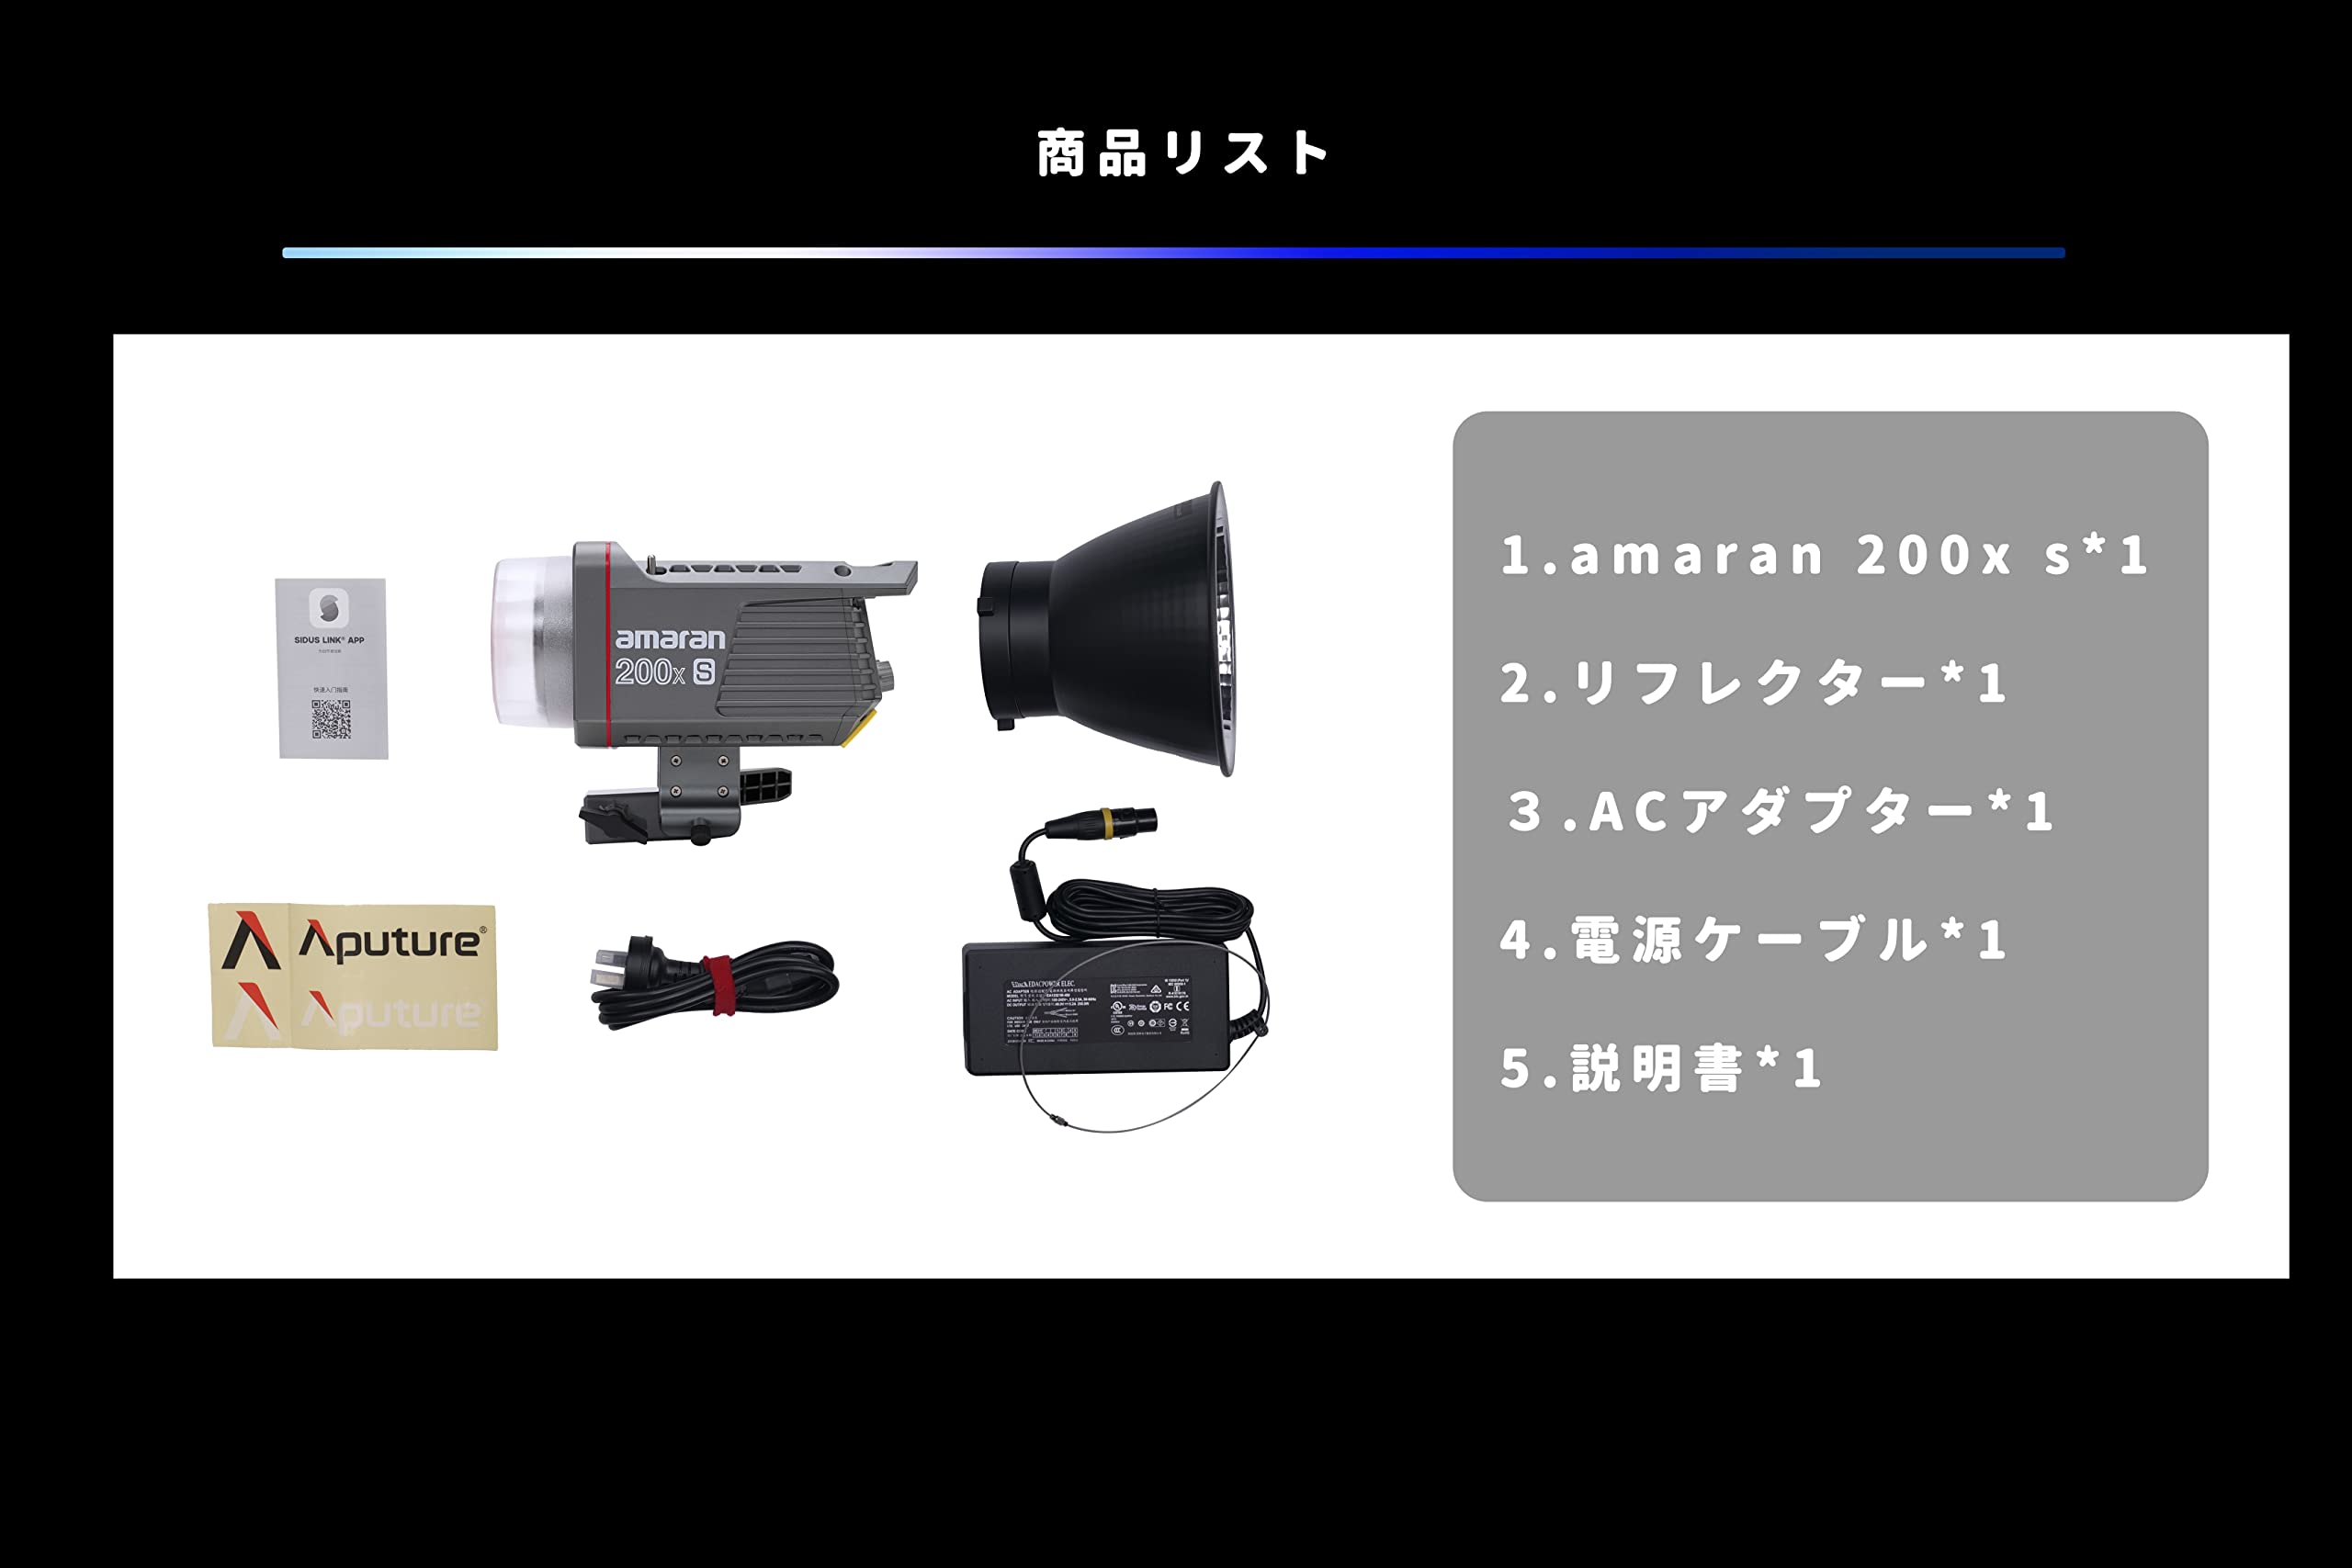 Amaran 200x-Sモデル LEDビデオライト 撮影ライト 映像機器